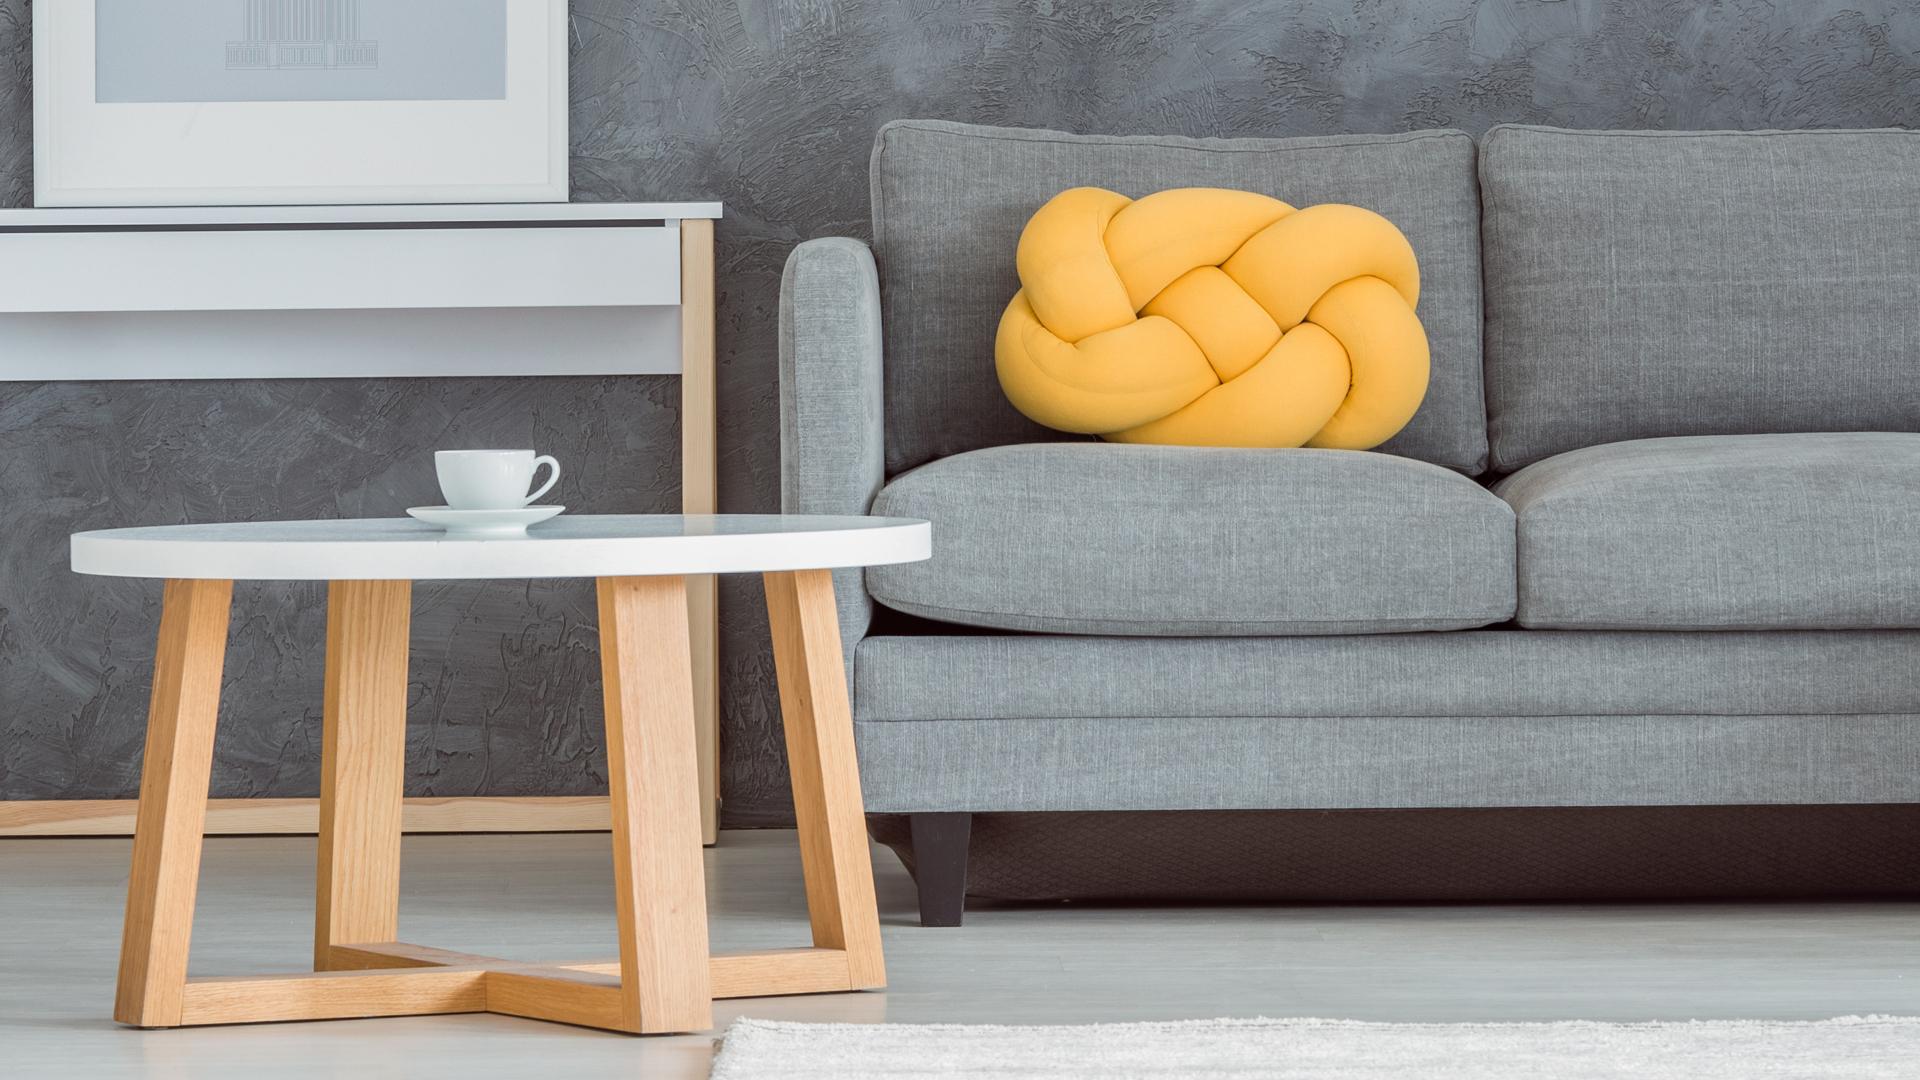 Interiörbild på ett vardagsrum. På bildens syns en del av en grå soffa och ett litet soffbord med en kaffekopp på.